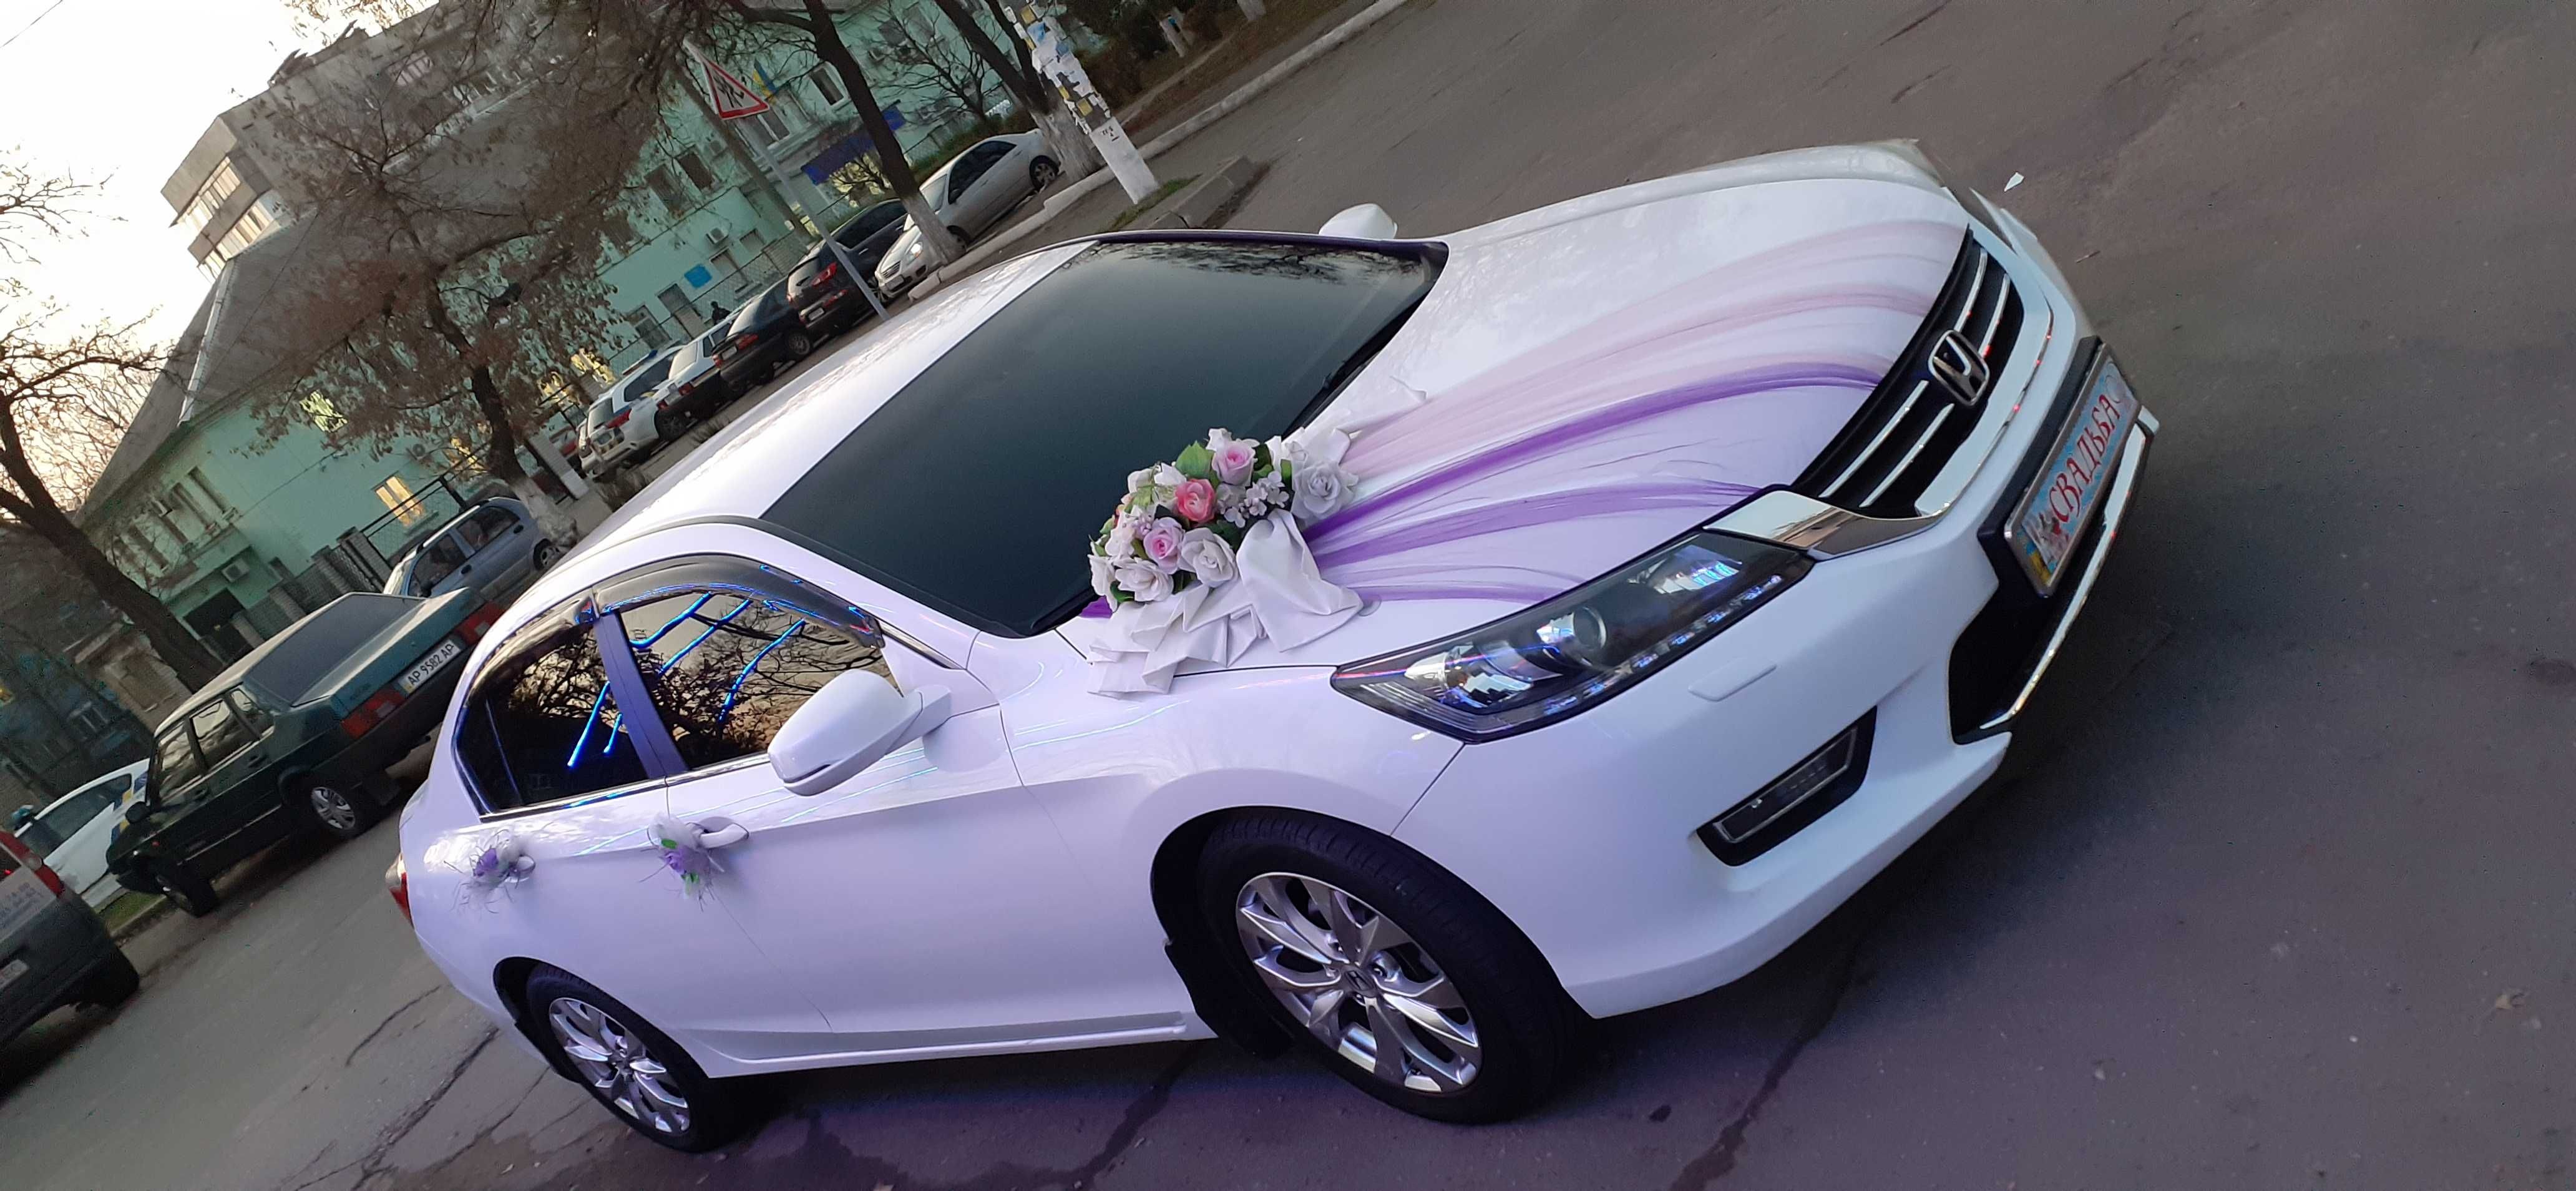 Cвадебный автомобиль Хонда АККОРД свадебное авто на свадьбу